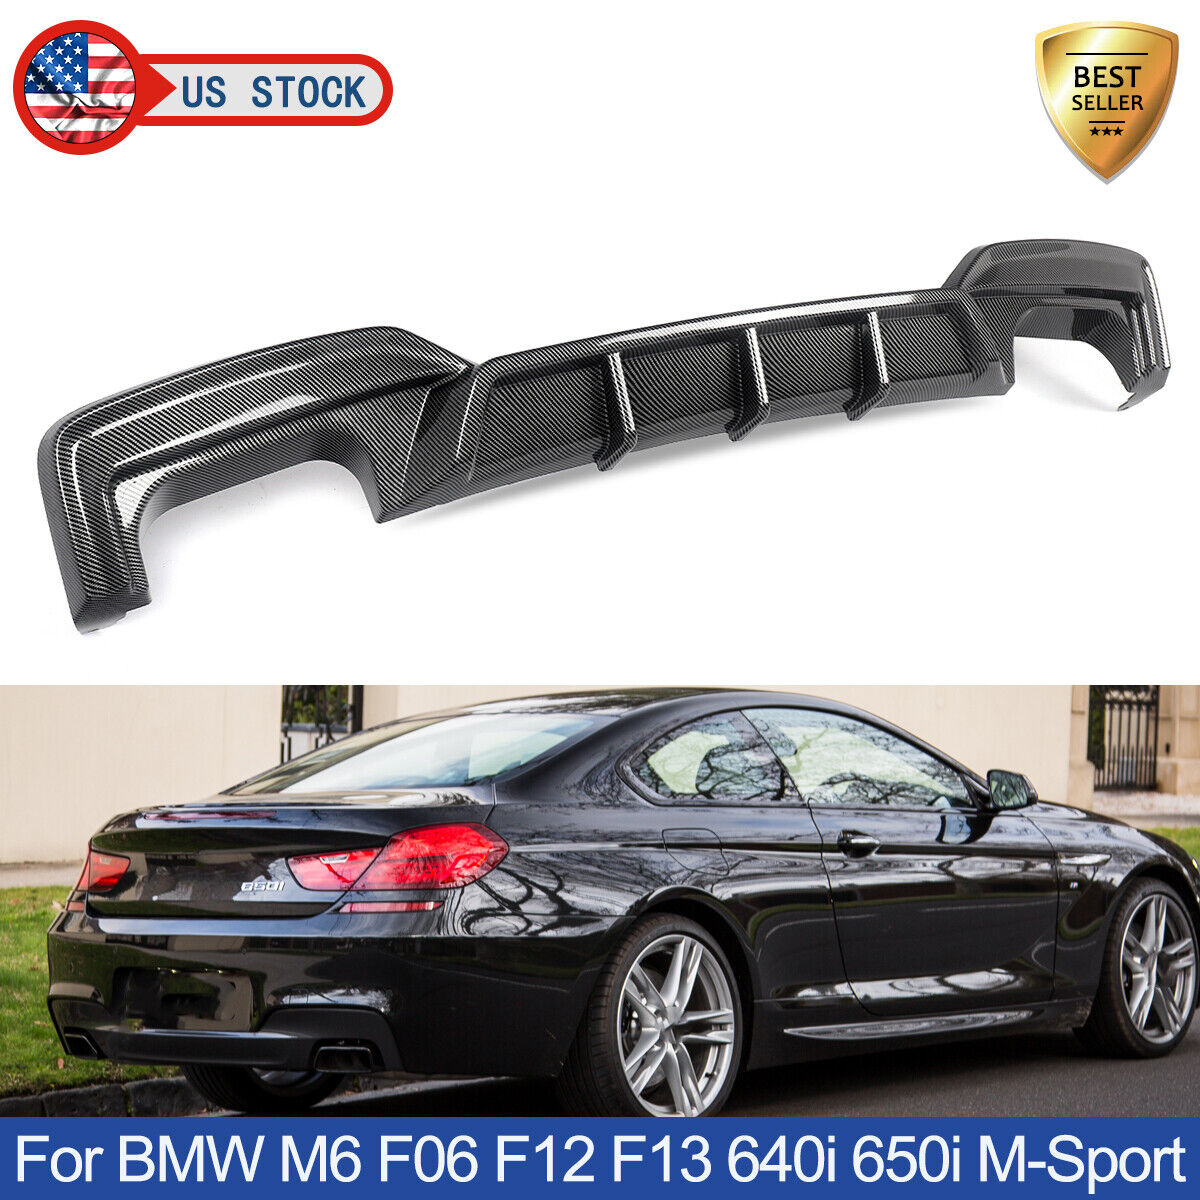 For BMW M6 F06 F12 F13 640i 650i M-Sport Carbon Fiber Rear Bumper Diffuser Lip